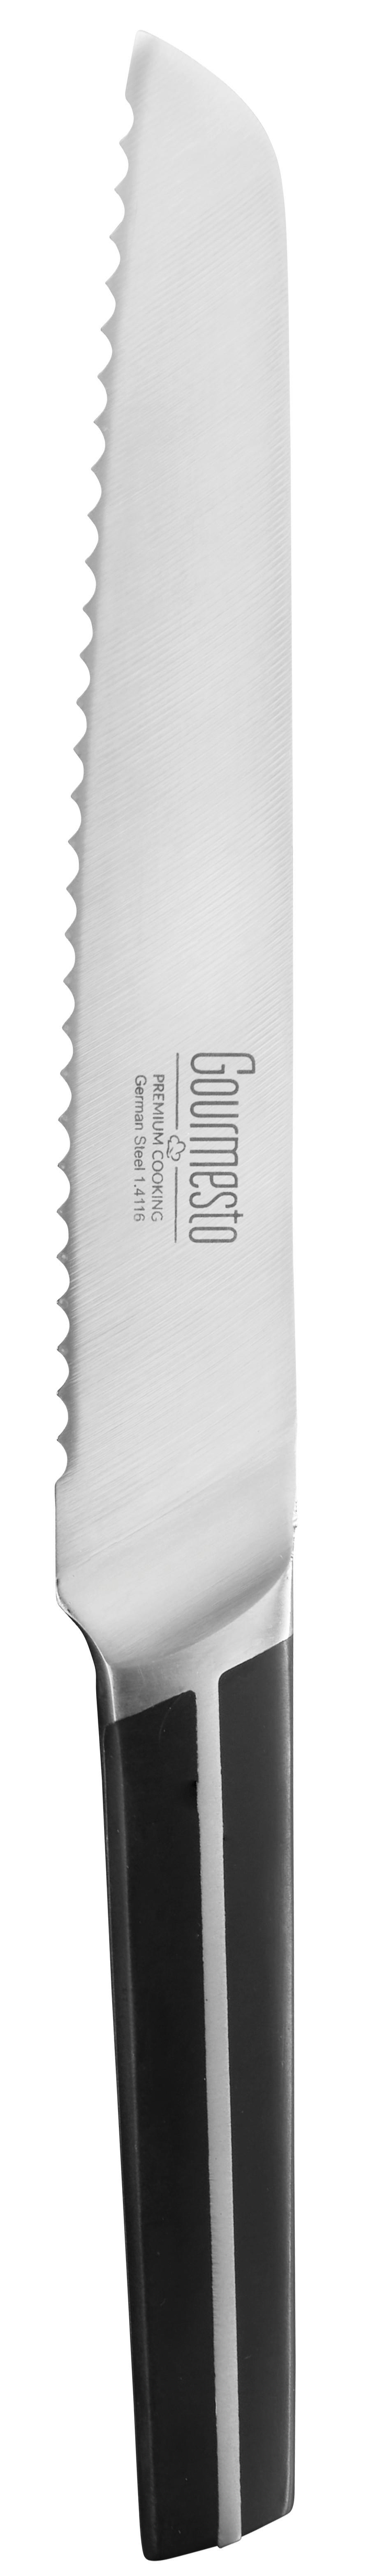 Brotmesser Profi Line ca. 33,3cm - Edelstahlfarben/Schwarz, KONVENTIONELL, Kunststoff/Metall (33,3cm) - Gourmesto